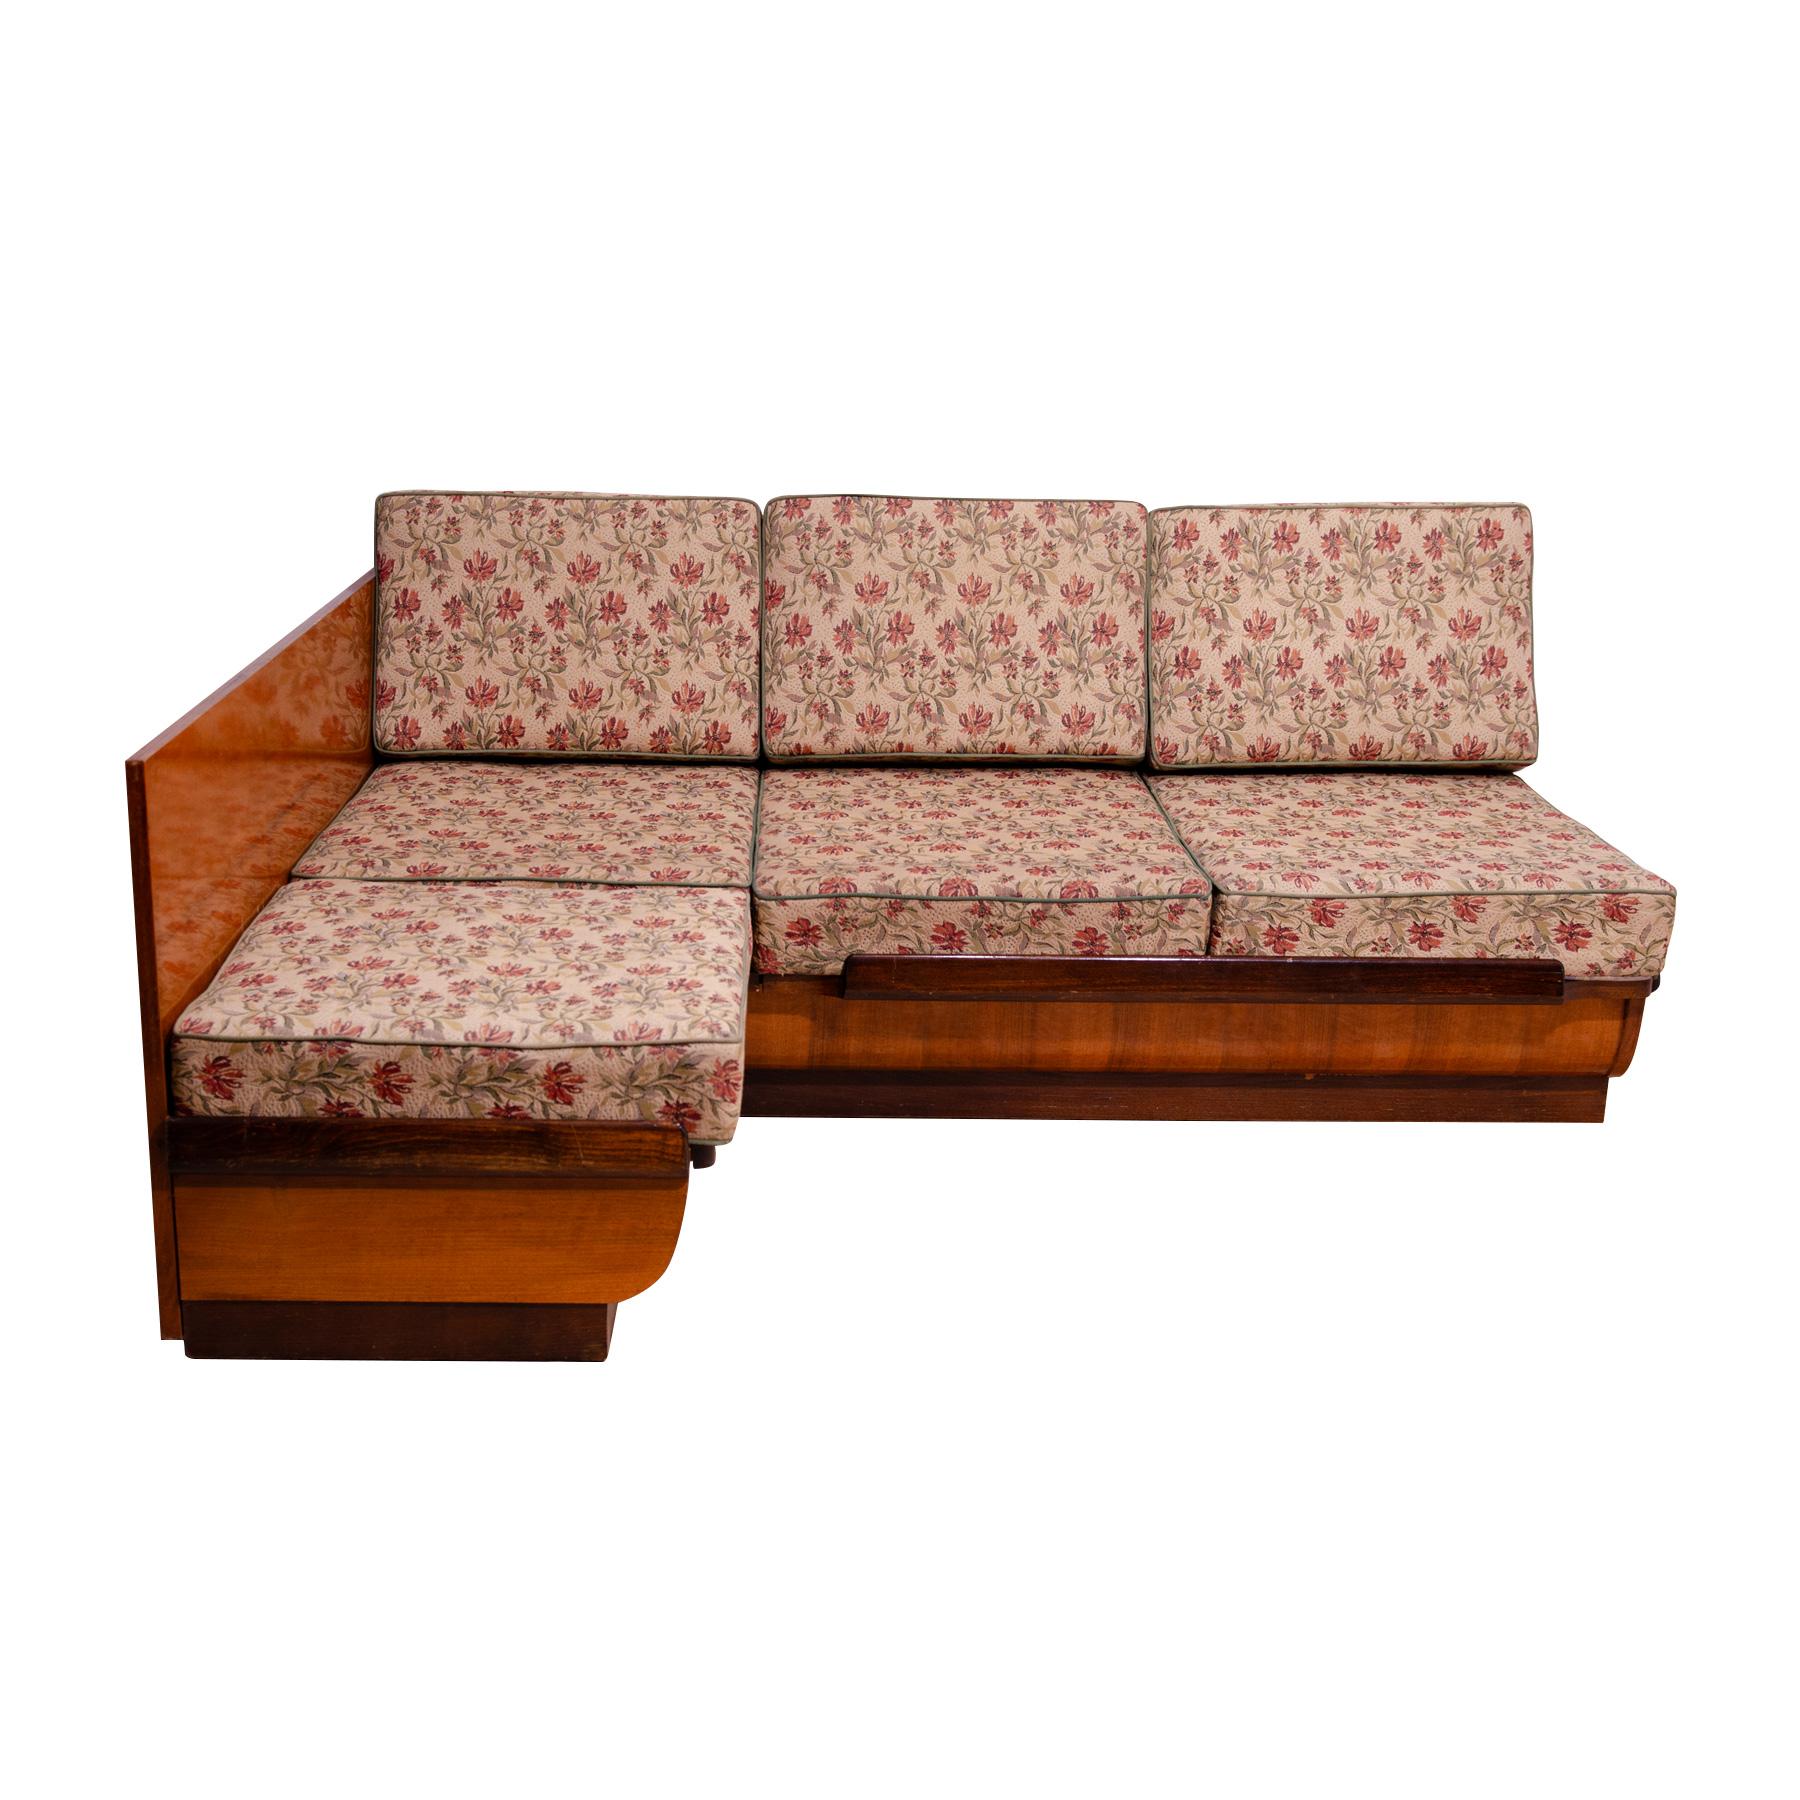 Ce canapé-lit d'angle du milieu du siècle a été conçu par Jindřich Halabala. Il a été fabriqué dans l'ancienne Tchécoslovaquie dans les années 1950. Ce canapé est doté d'une structure en bois plaqué en noyer. Le canapé est réglable pour le couchage